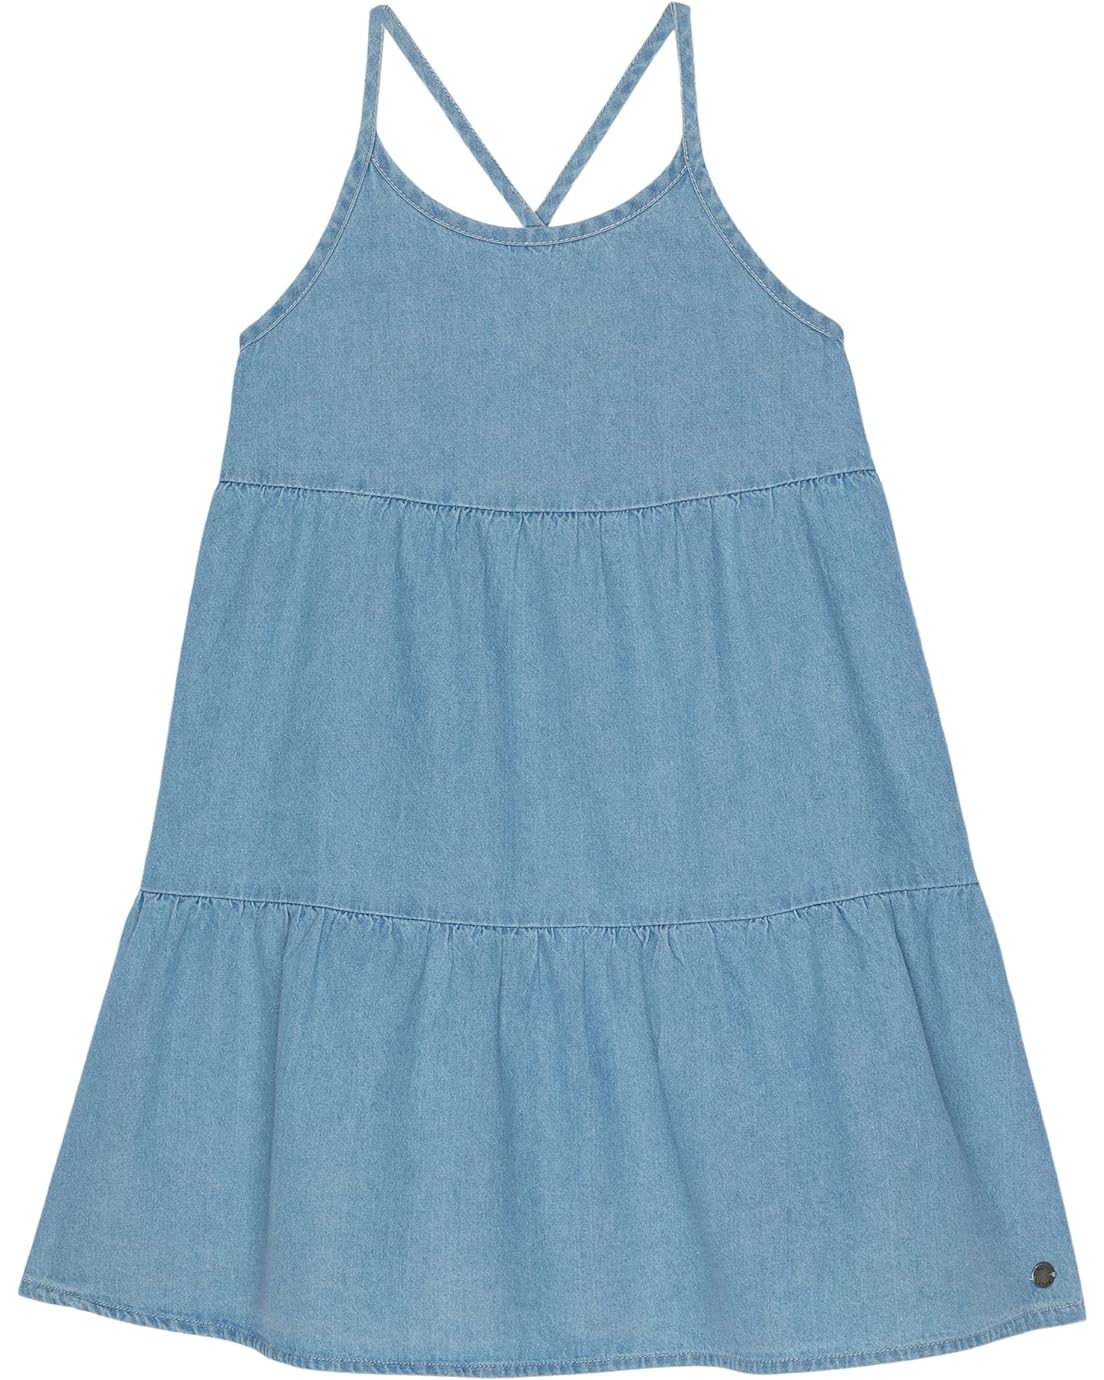 Roxy Kids Cool For The Summer Dress (Little Kidsu002FBig Kids)